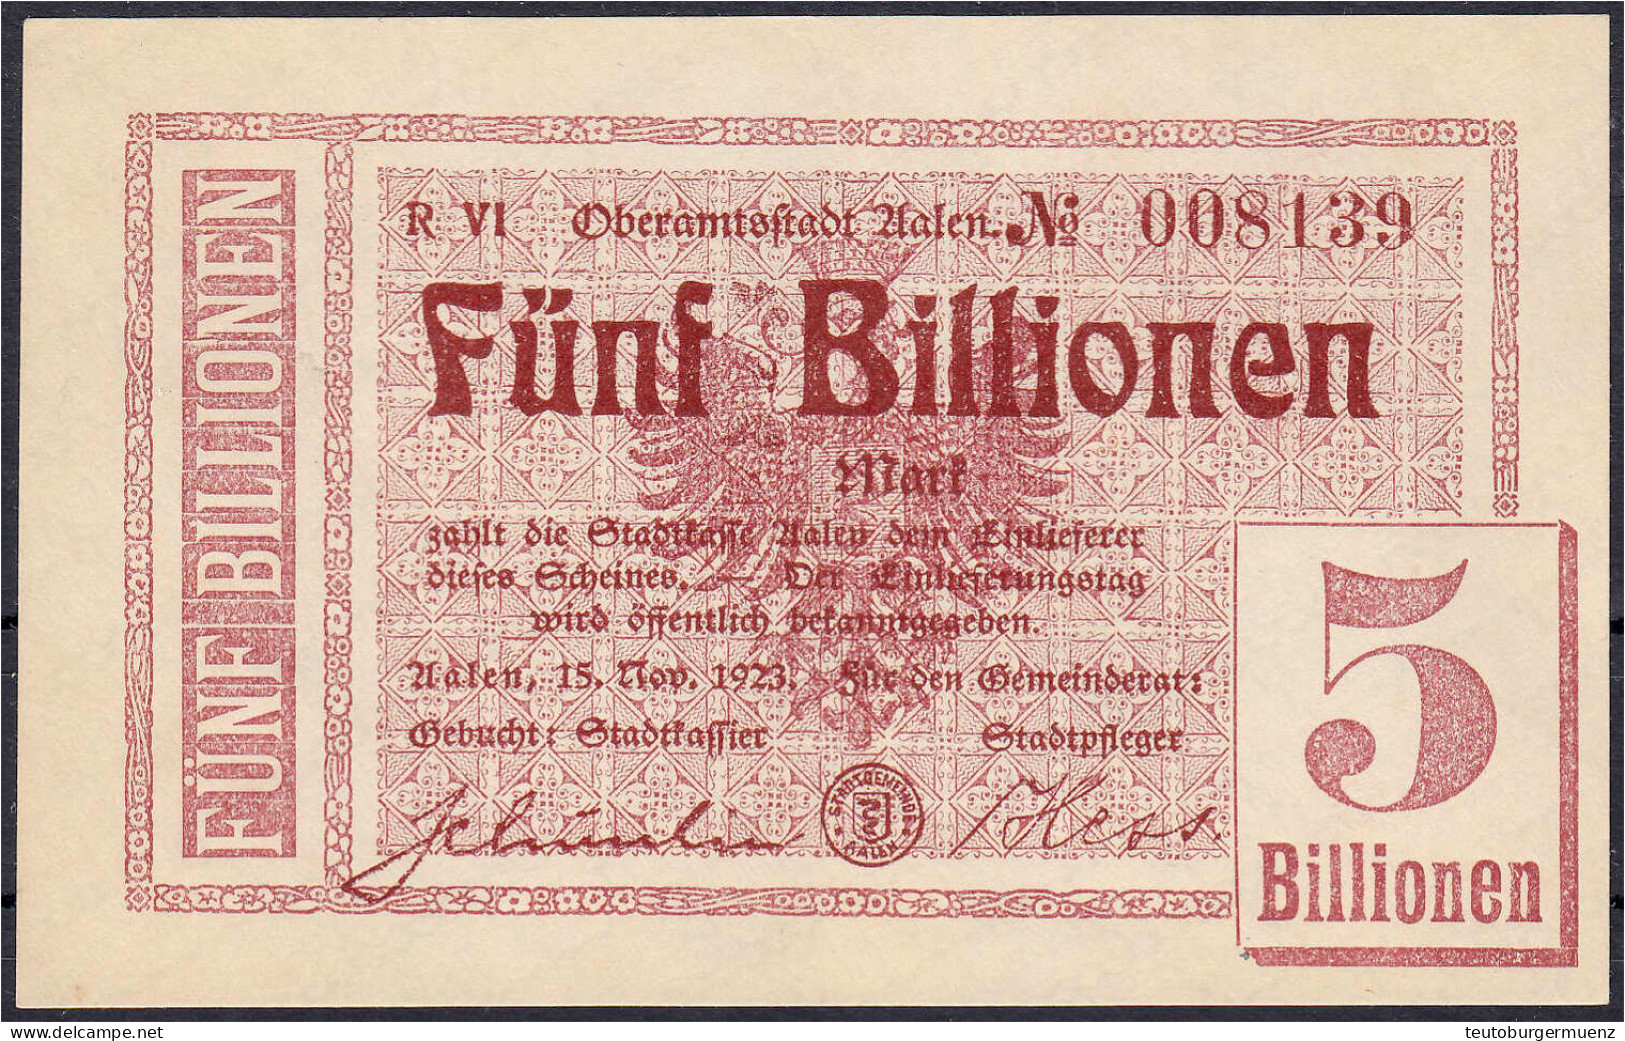 Stadtgemeinde, 5 Bio. Mark 15.11.1923. Wz. Typ II. I- Dießner. 002.6. - [11] Emissions Locales